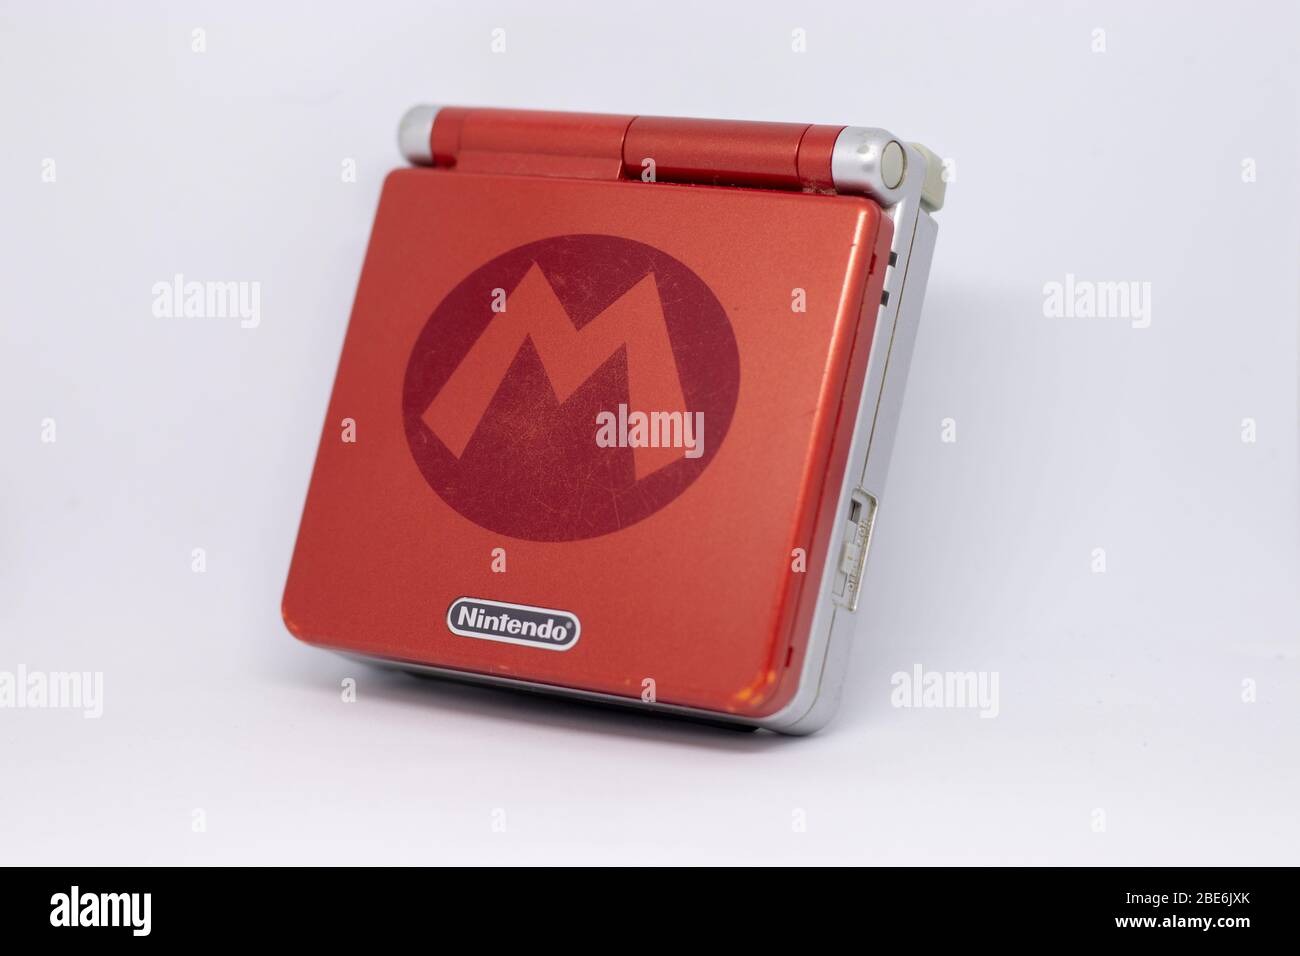 Game boy Advanced SP console portatile da Nintendo da 2003 in rosso argento Super Mario Edition. Chiuso visto dall'esterno su sfondo bianco Foto Stock